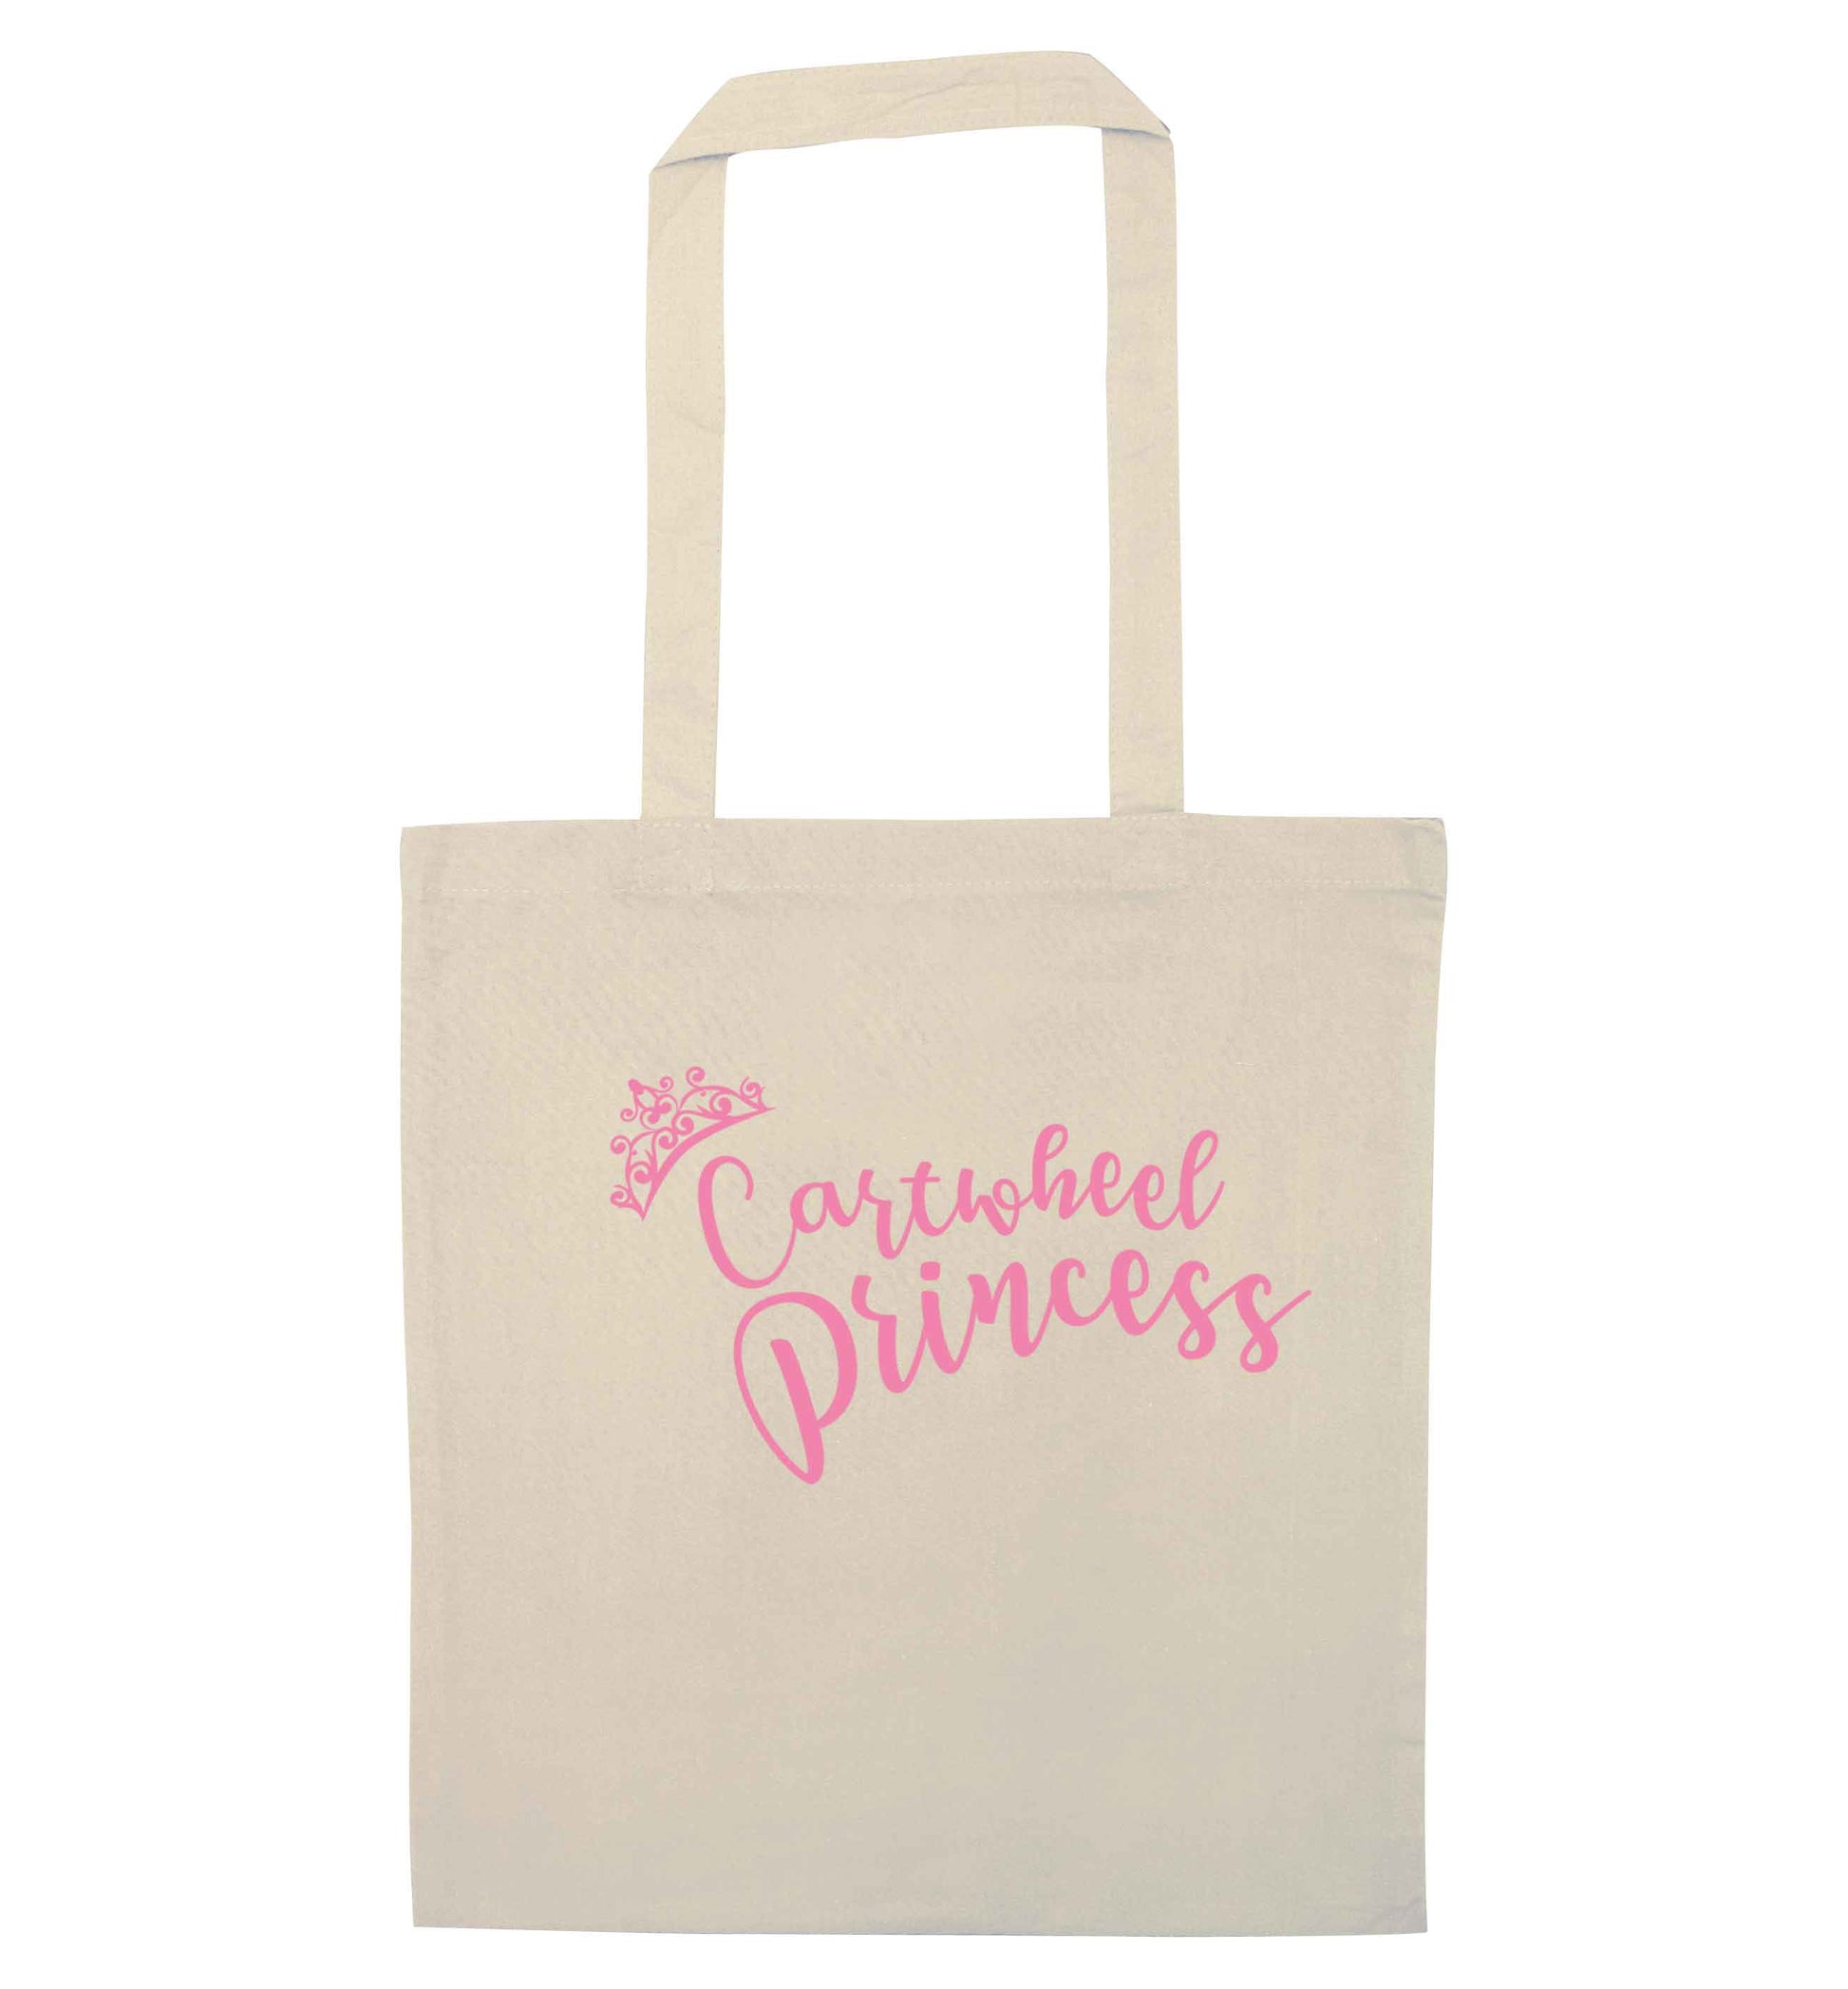 Cartwheel princess natural tote bag